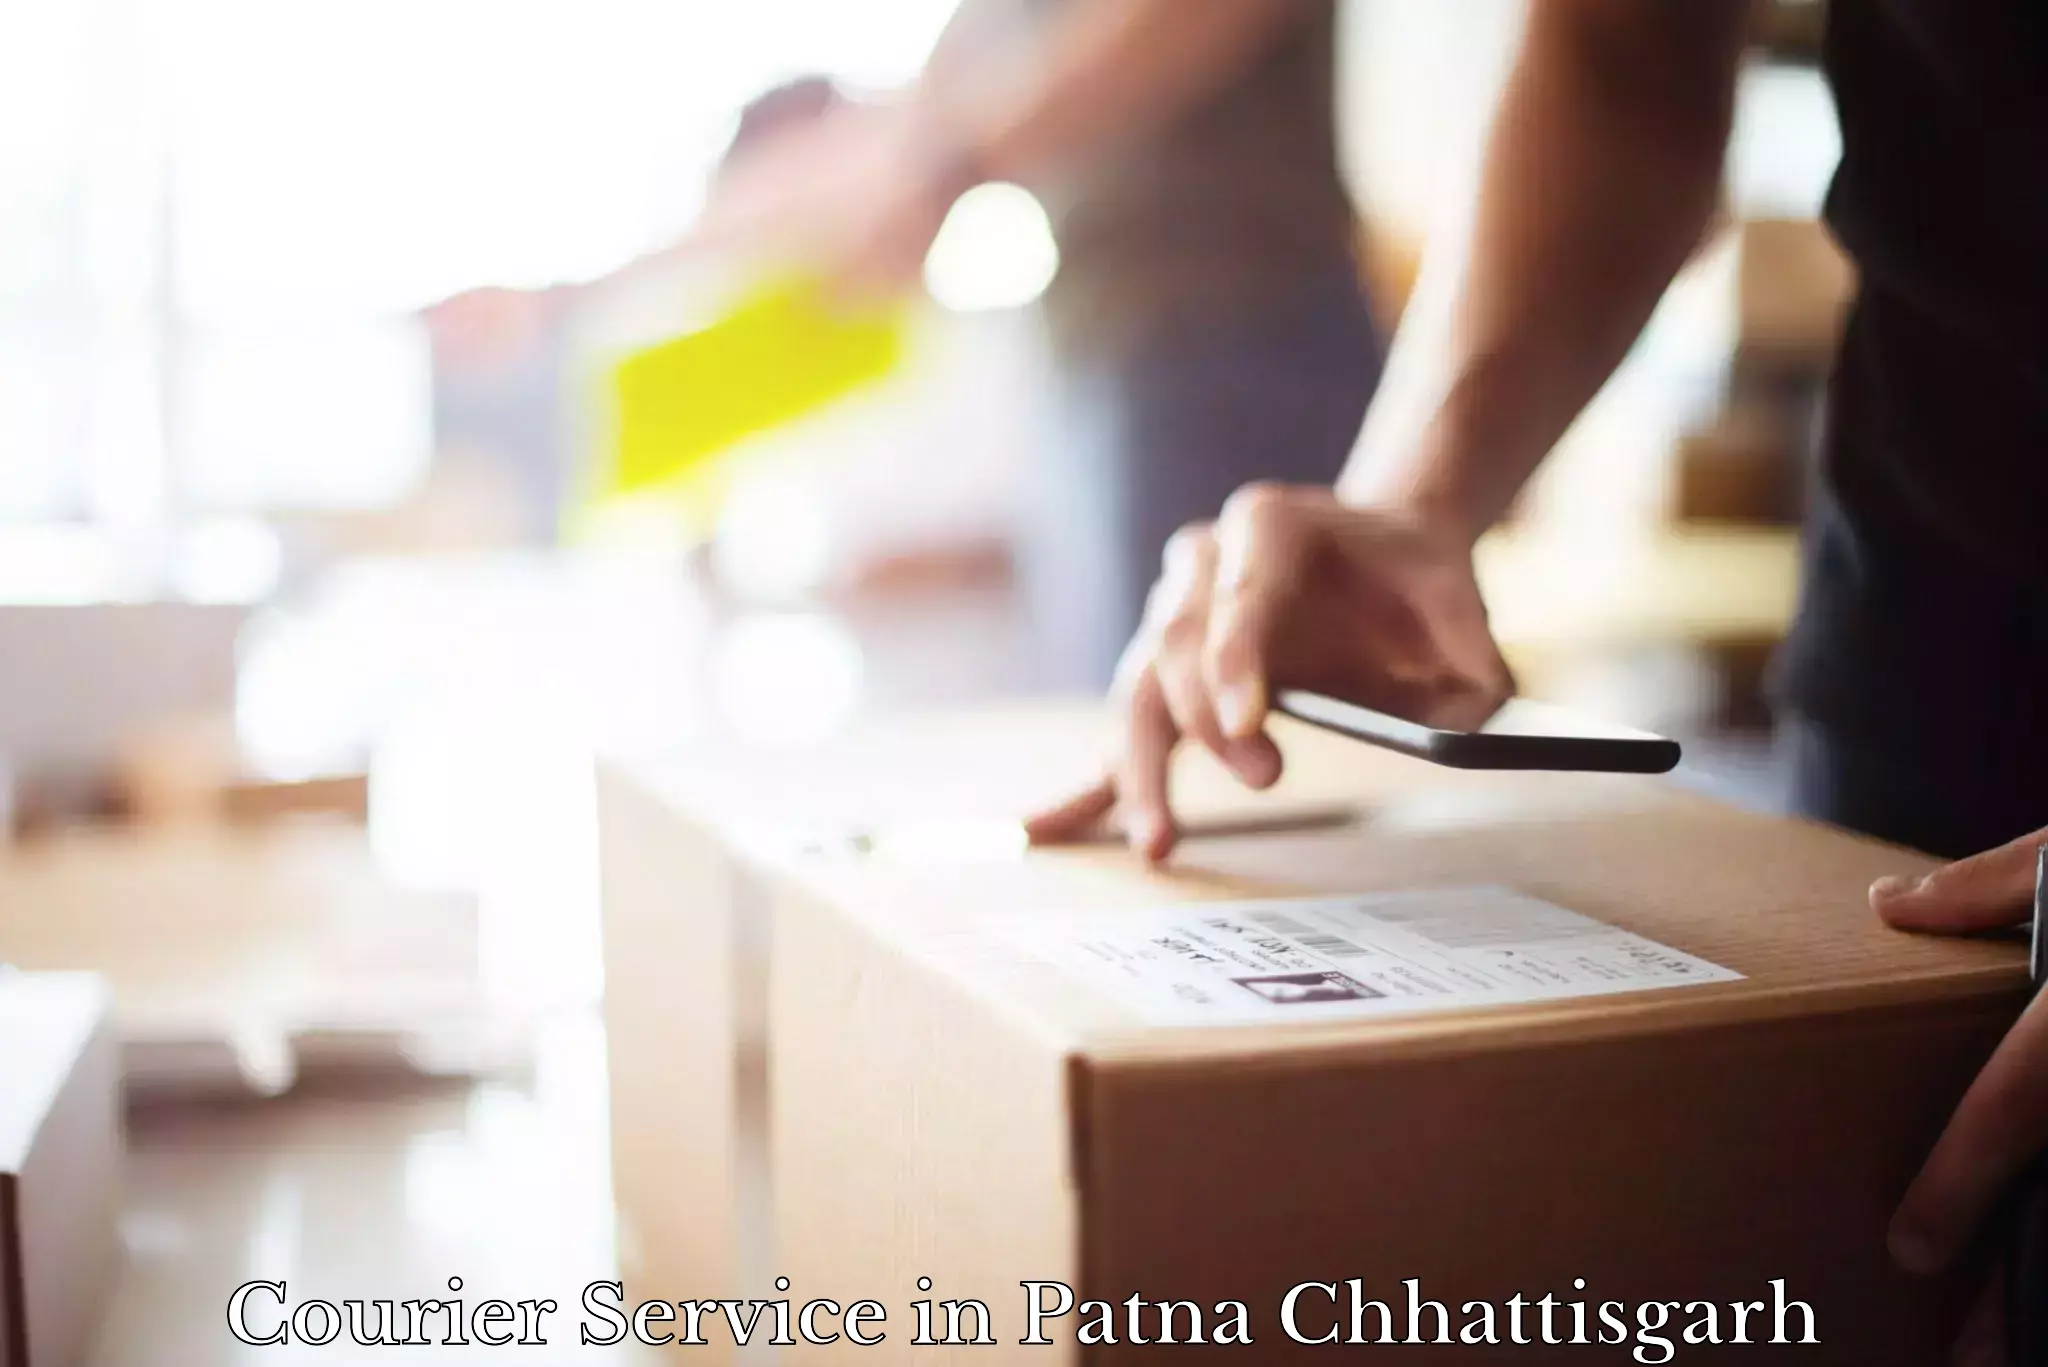 Multi-service courier options in Patna Chhattisgarh